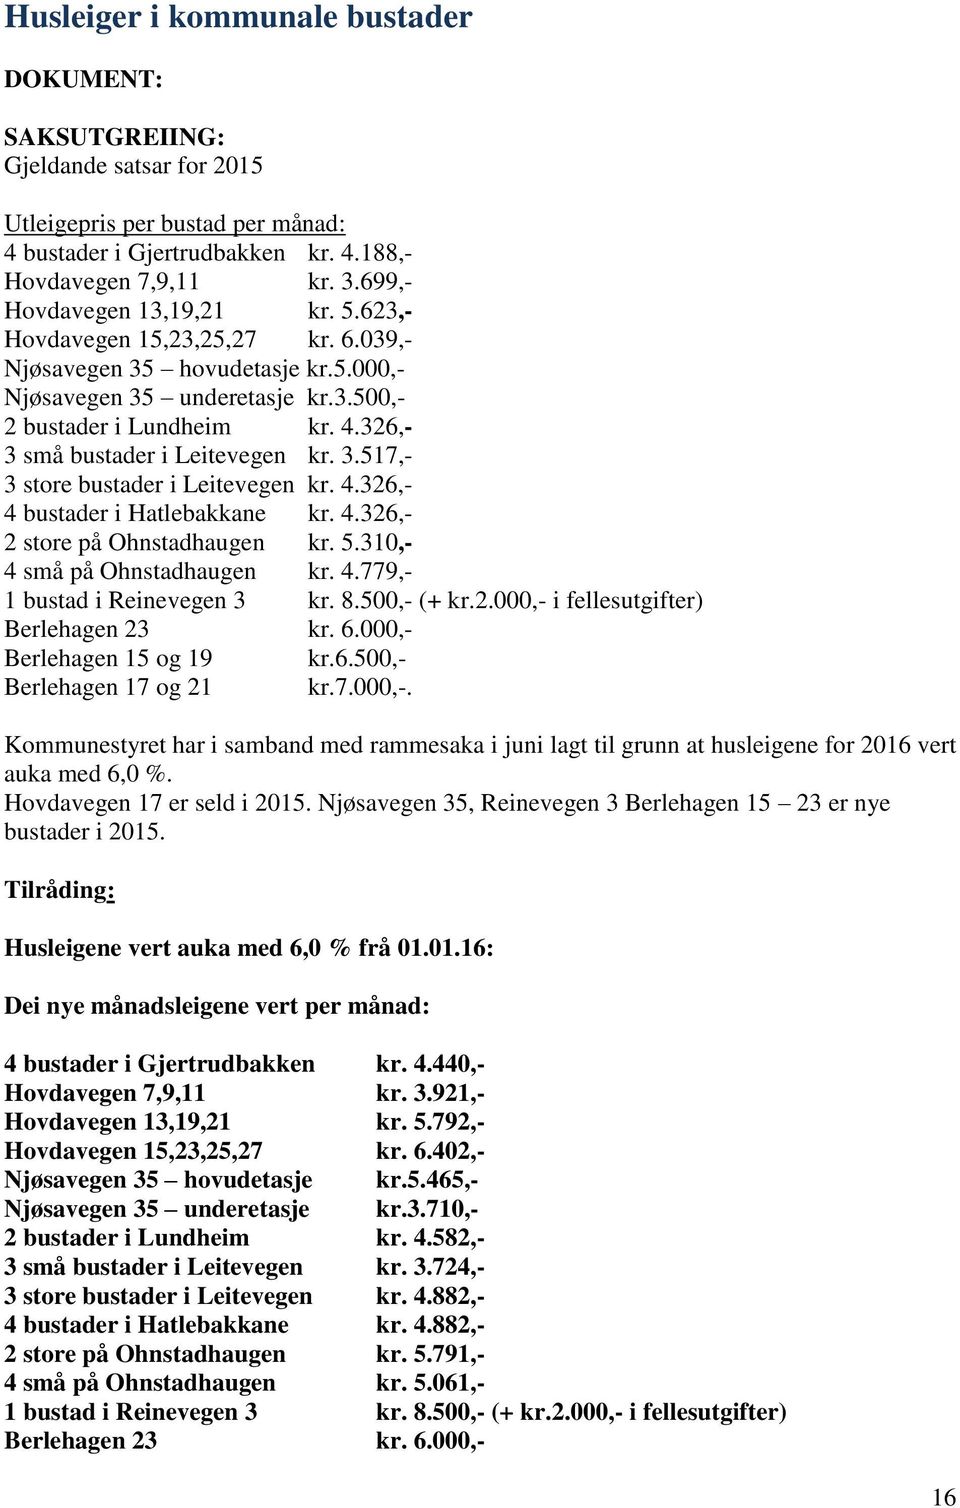 4.326,- 4 bustader i Hatlebakkane kr. 4.326,- 2 store på Ohnstadhaugen kr. 5.310,- 4 små på Ohnstadhaugen kr. 4.779,- 1 bustad i Reinevegen 3 kr. 8.500,- (+ kr.2.000,- i fellesutgifter) Berlehagen 23 kr.